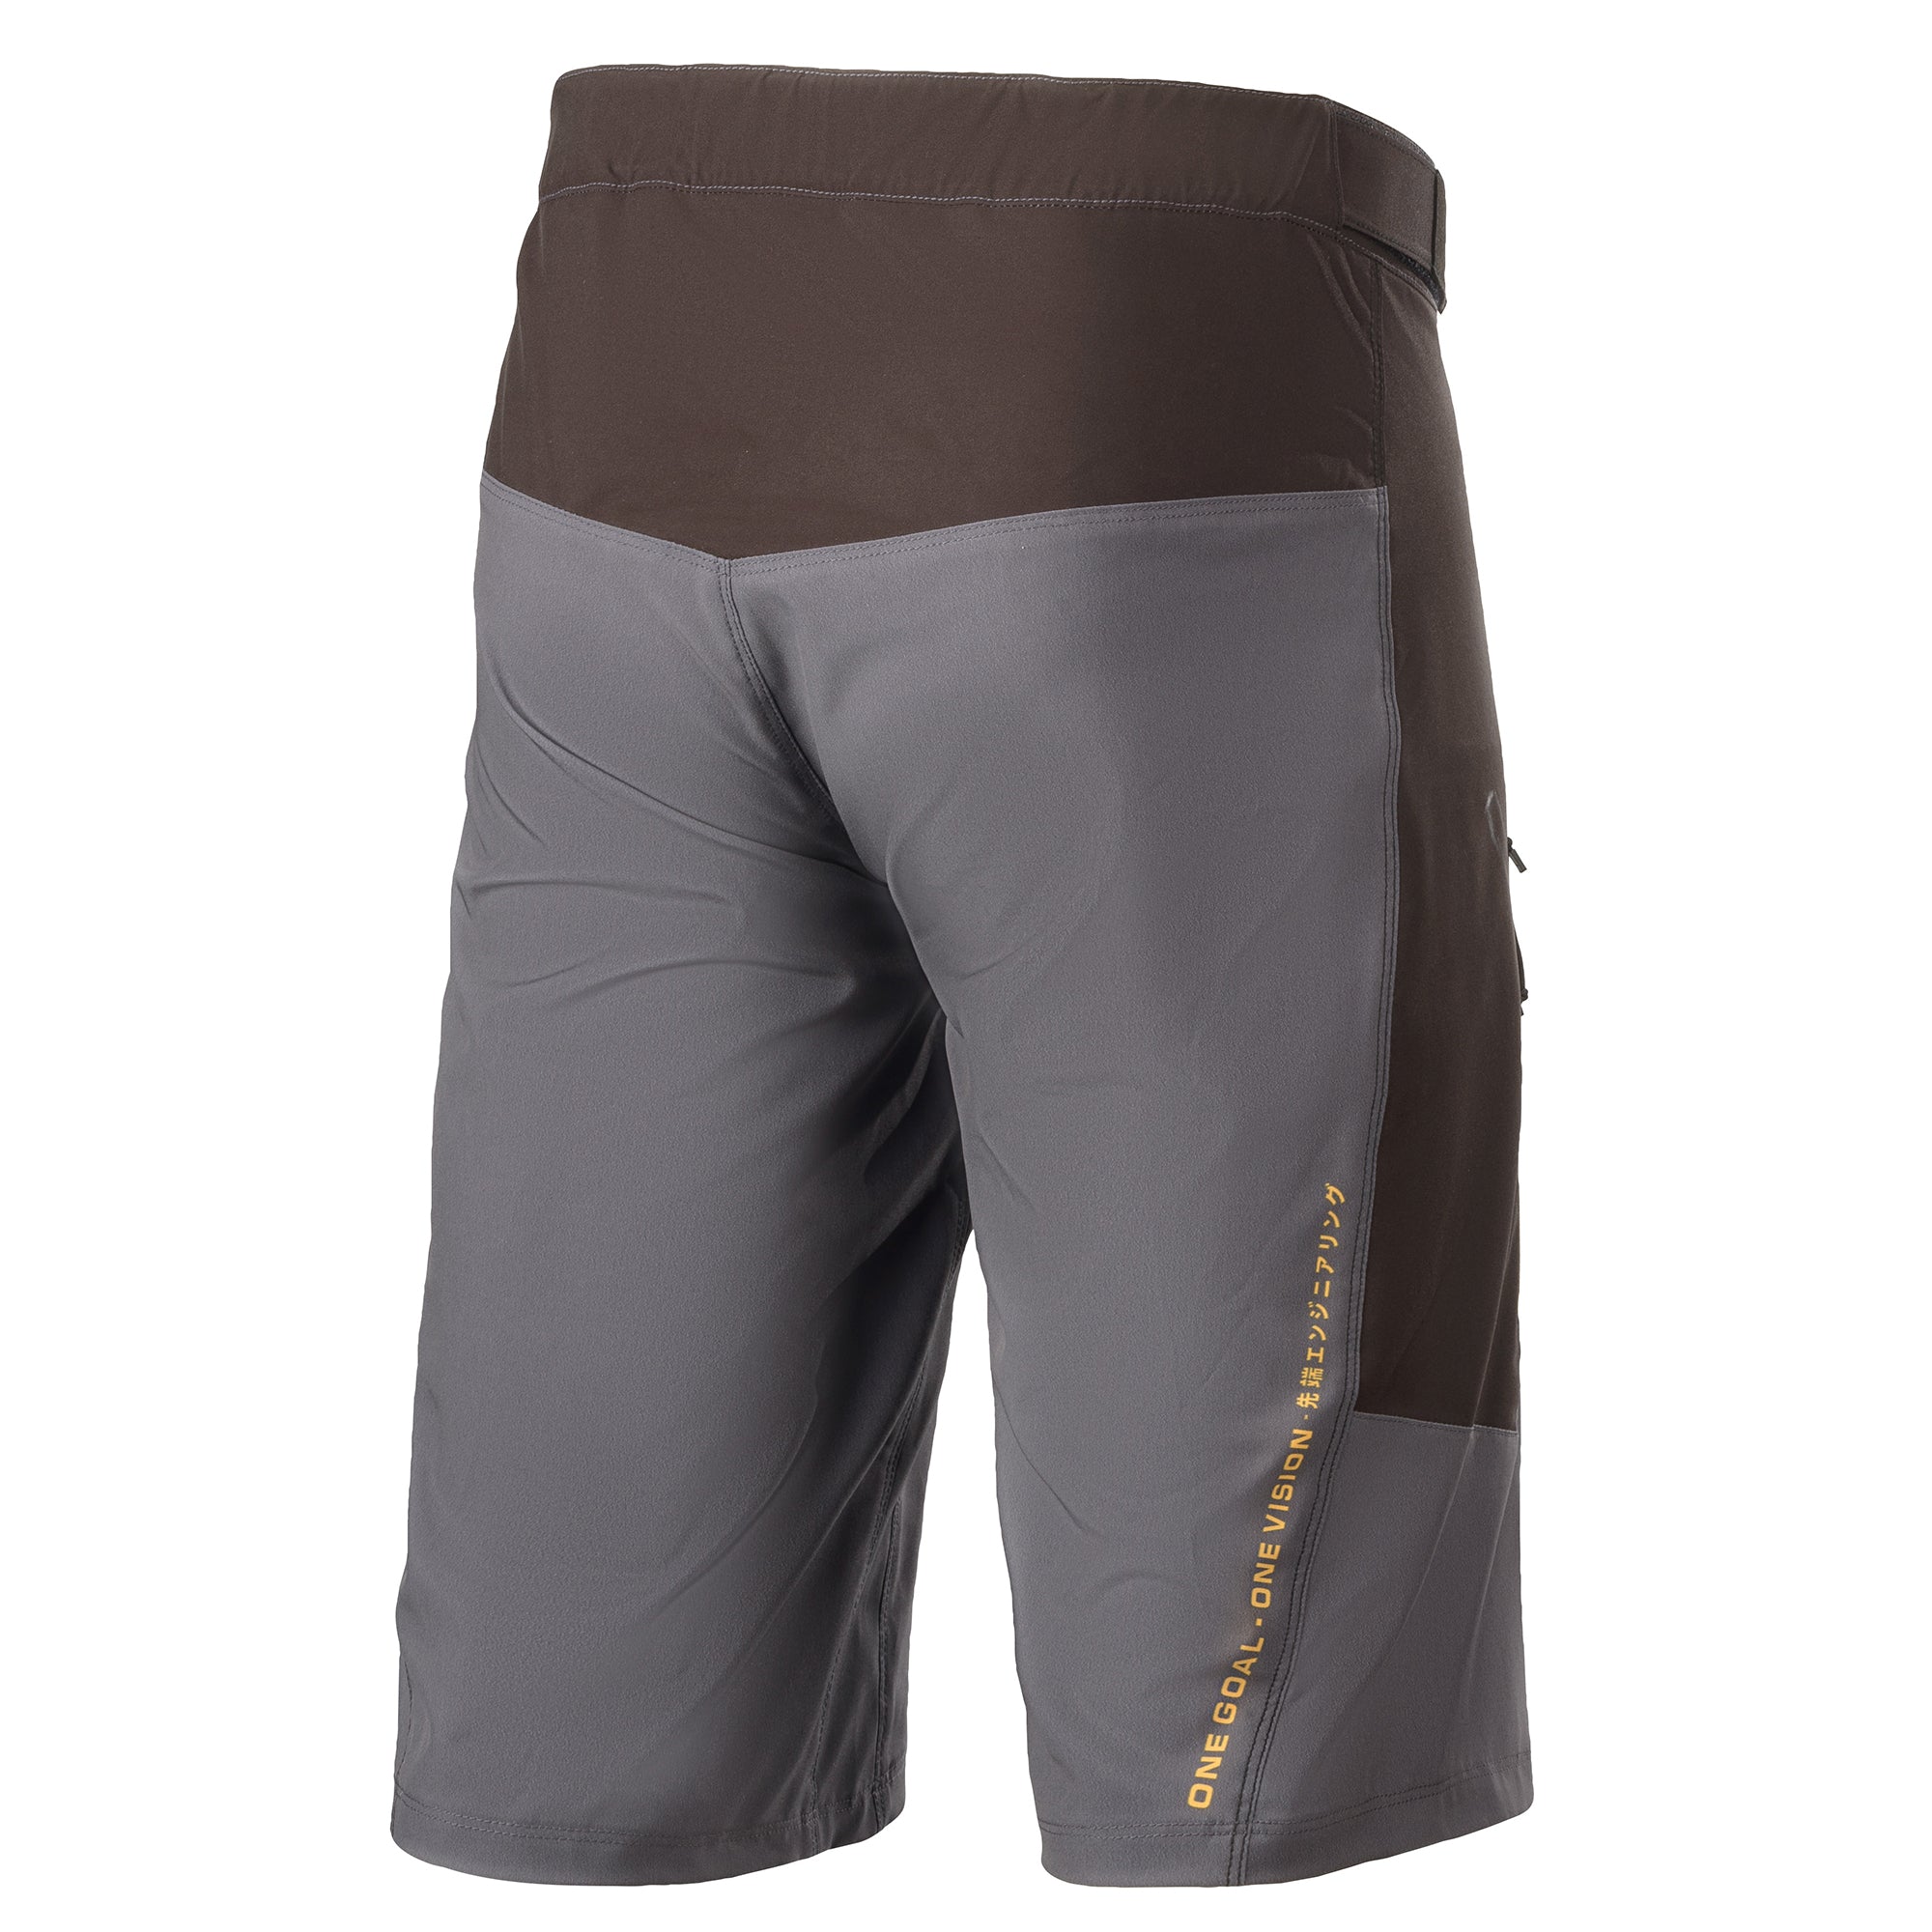 Alps 6.0 Shorts